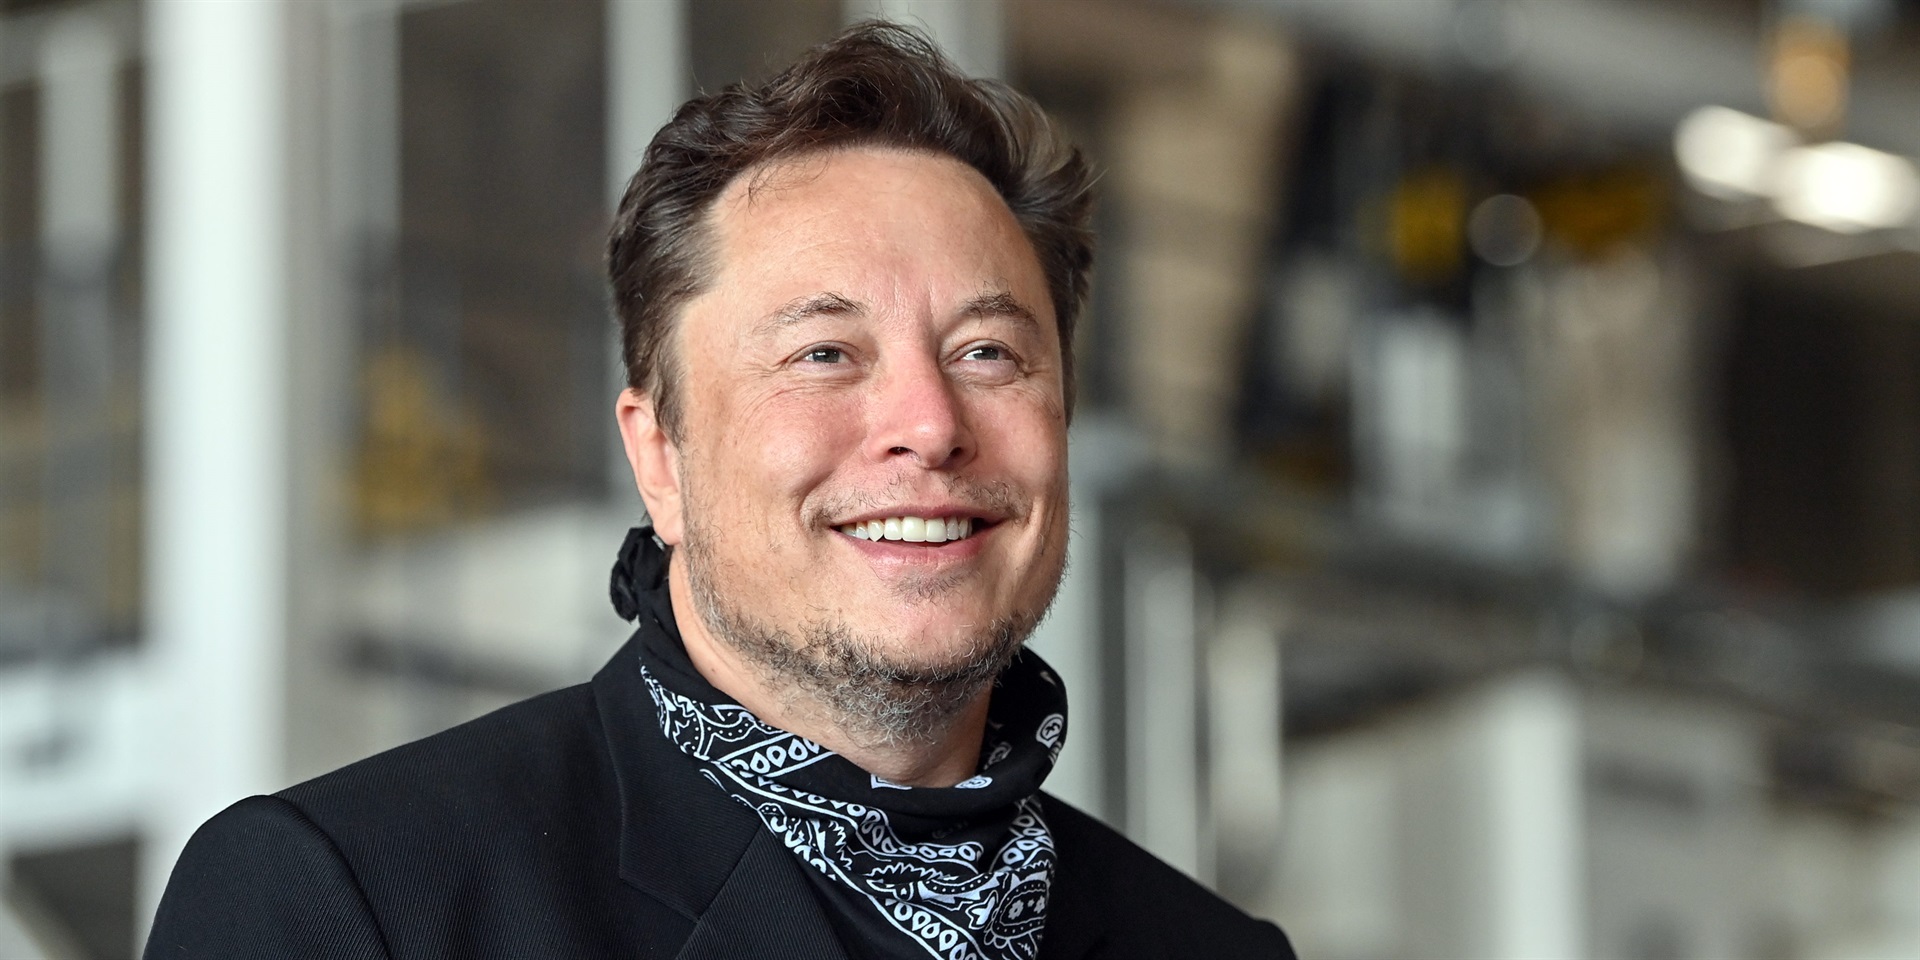 Tesla CEO Elon Musk. Patrick Pleul/picture allianc